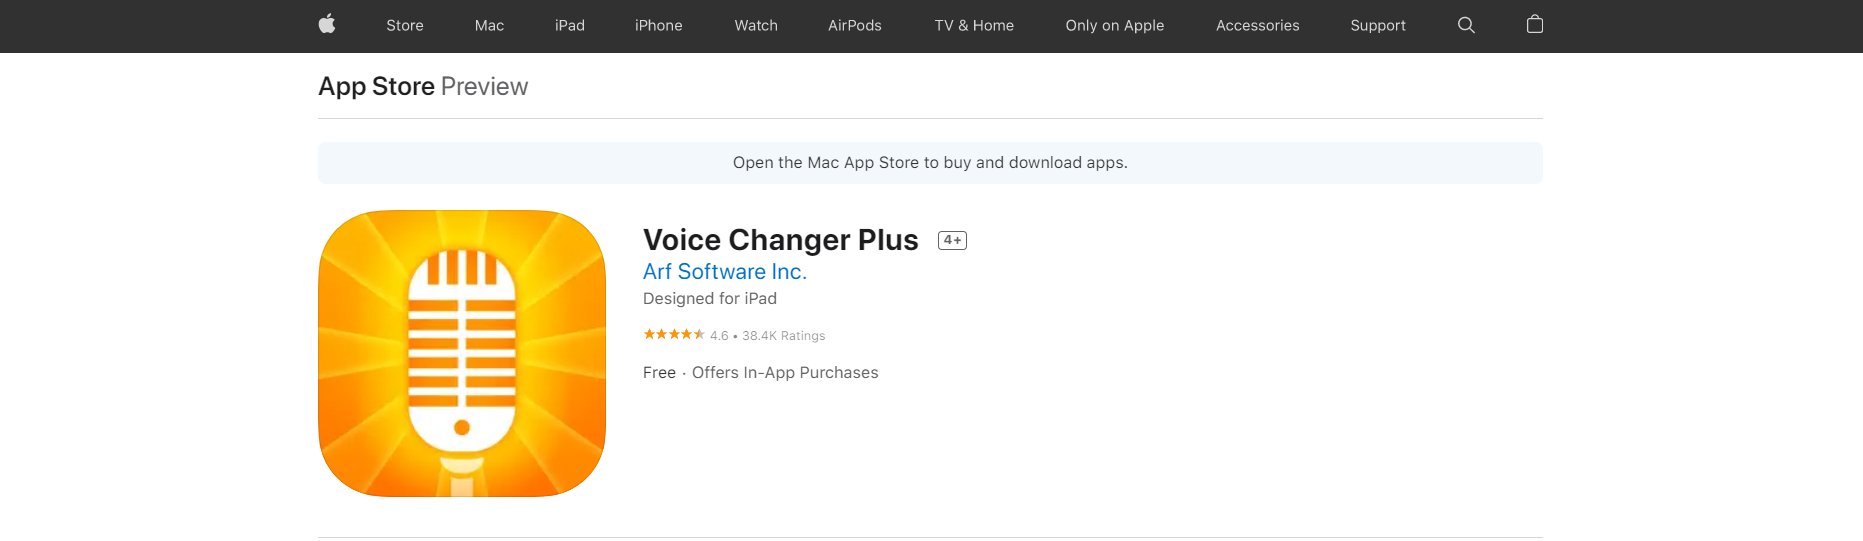 I-Voice Changer Plus